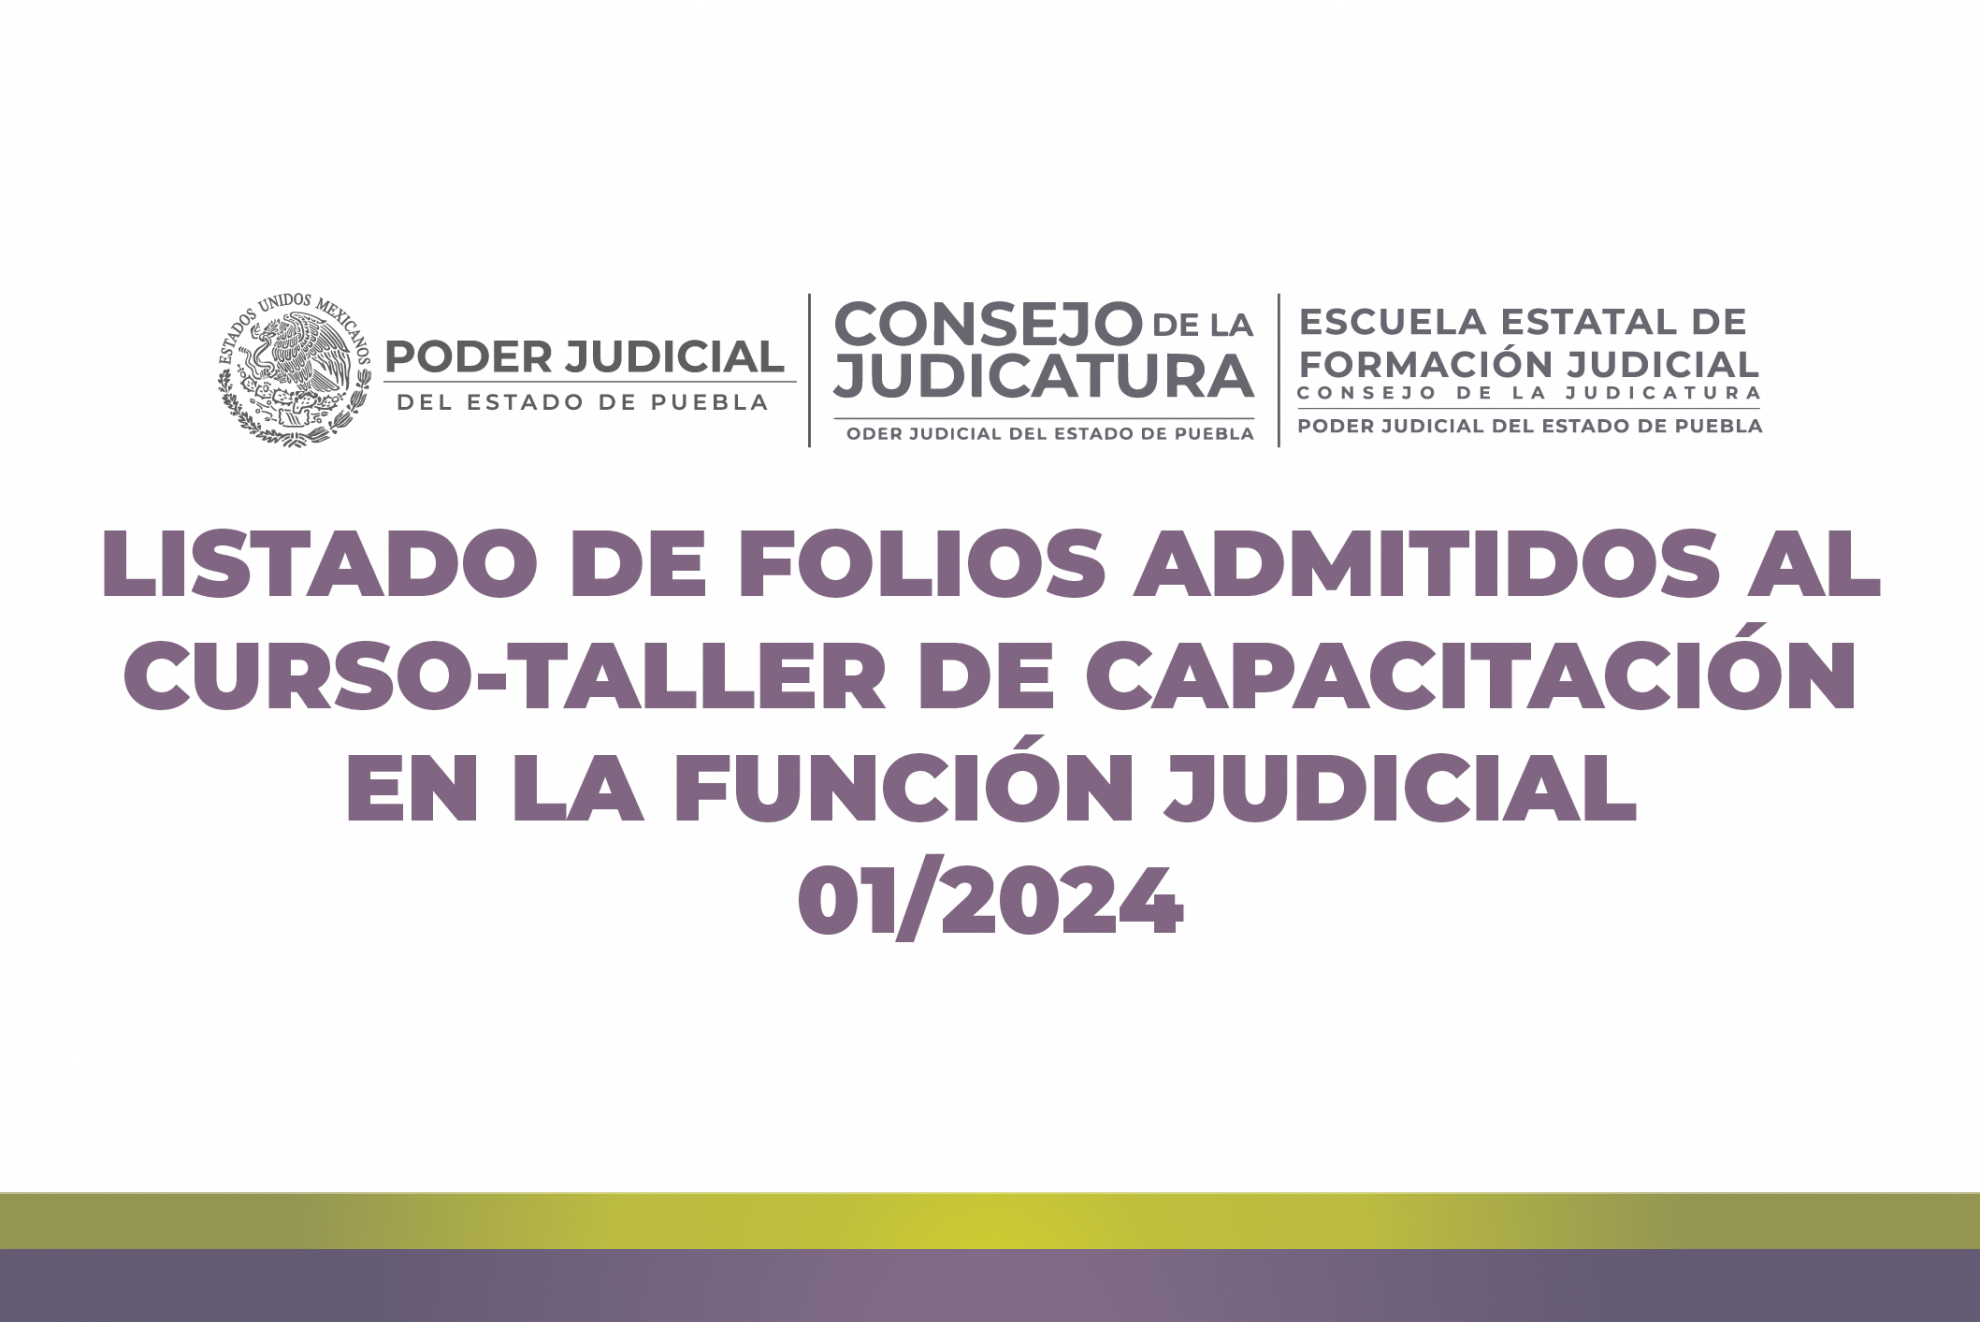 Listado de Folios Admitidos al CURSO-TALLER de Capacitación en la Función Judicial 01/2024